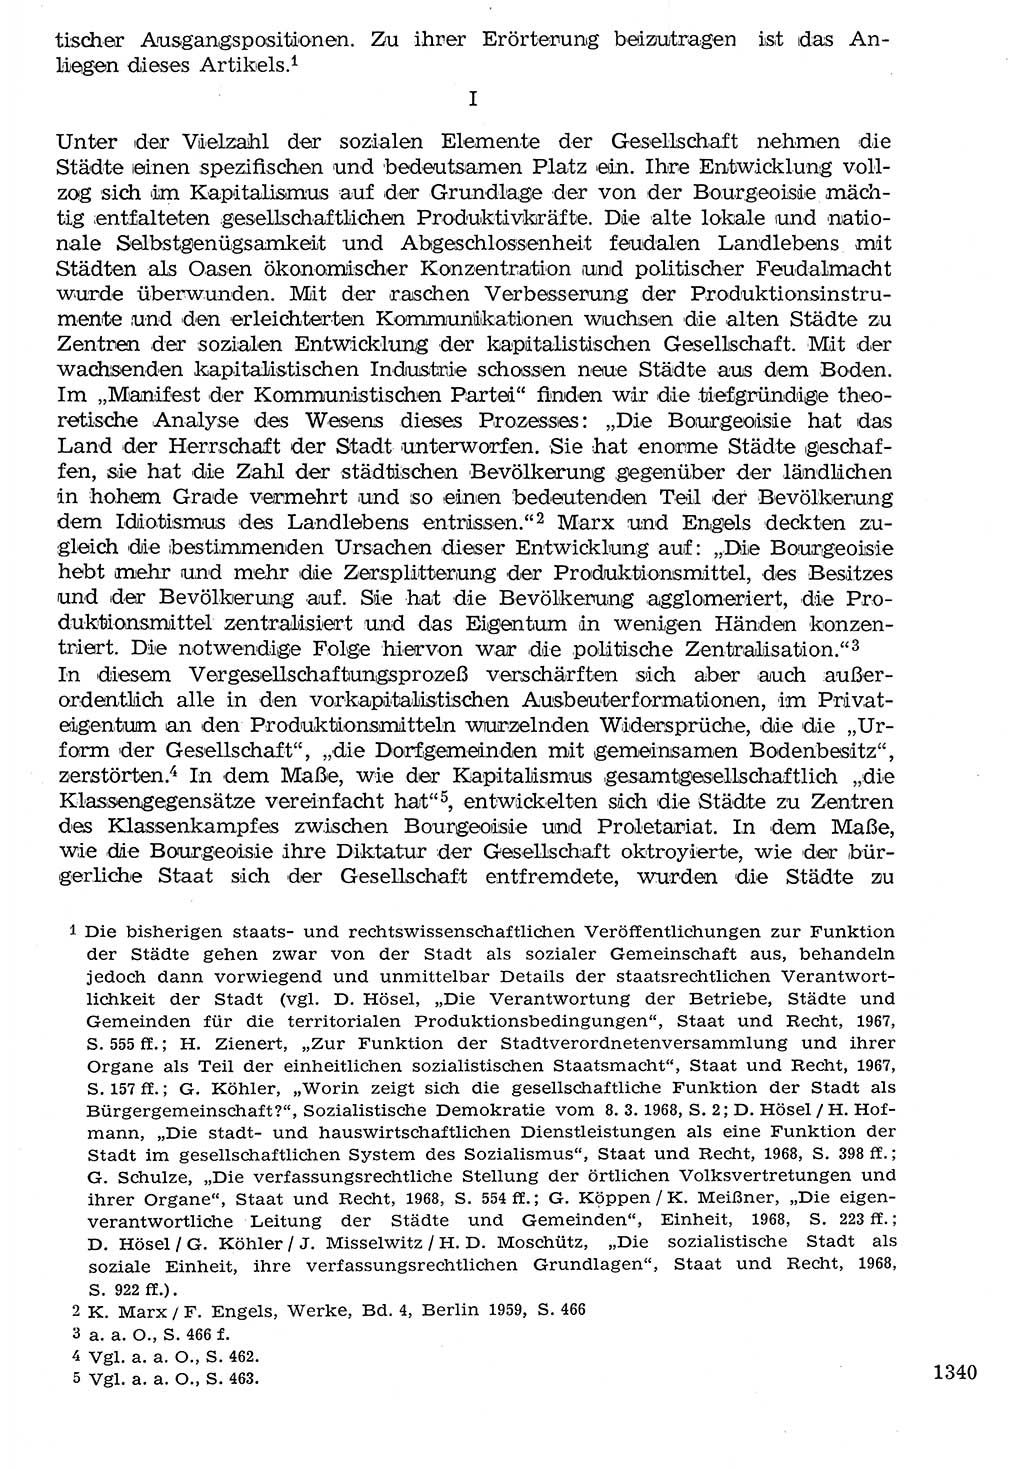 Staat und Recht (StuR), 17. Jahrgang [Deutsche Demokratische Republik (DDR)] 1968, Seite 1340 (StuR DDR 1968, S. 1340)